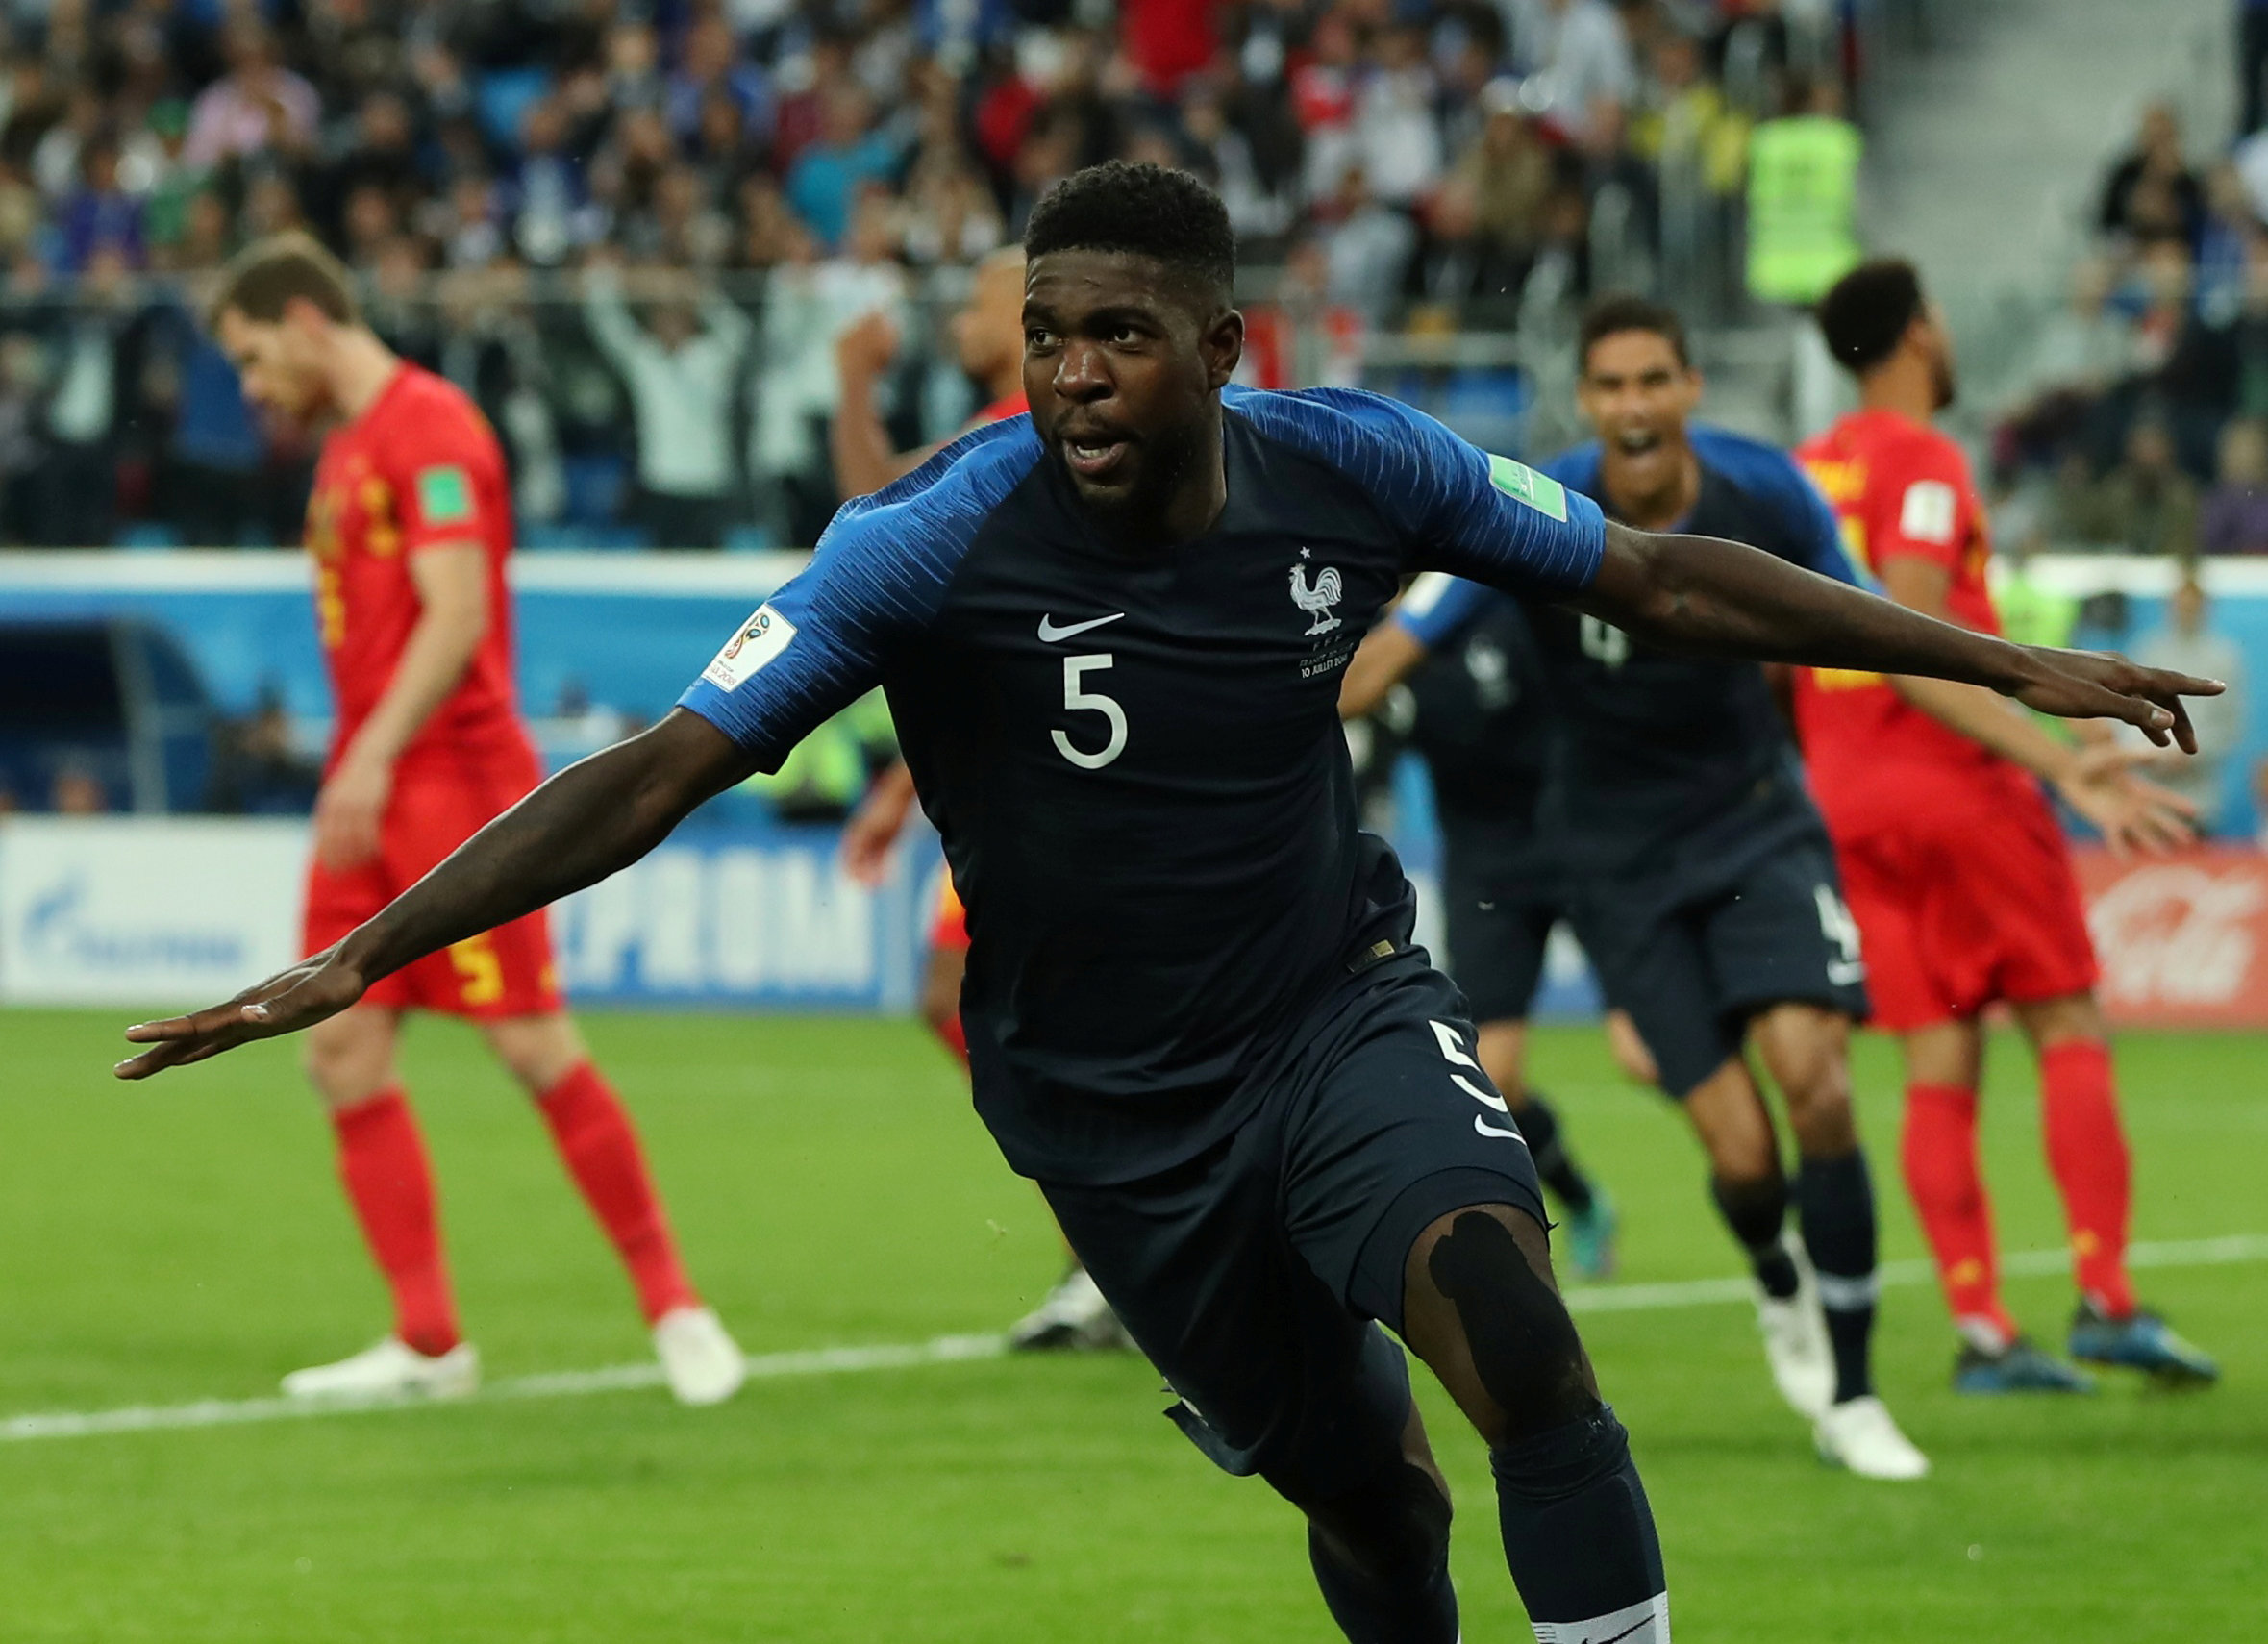 Con esta victoria, los franceses llegan a su tercera final jugada en Mundiales.